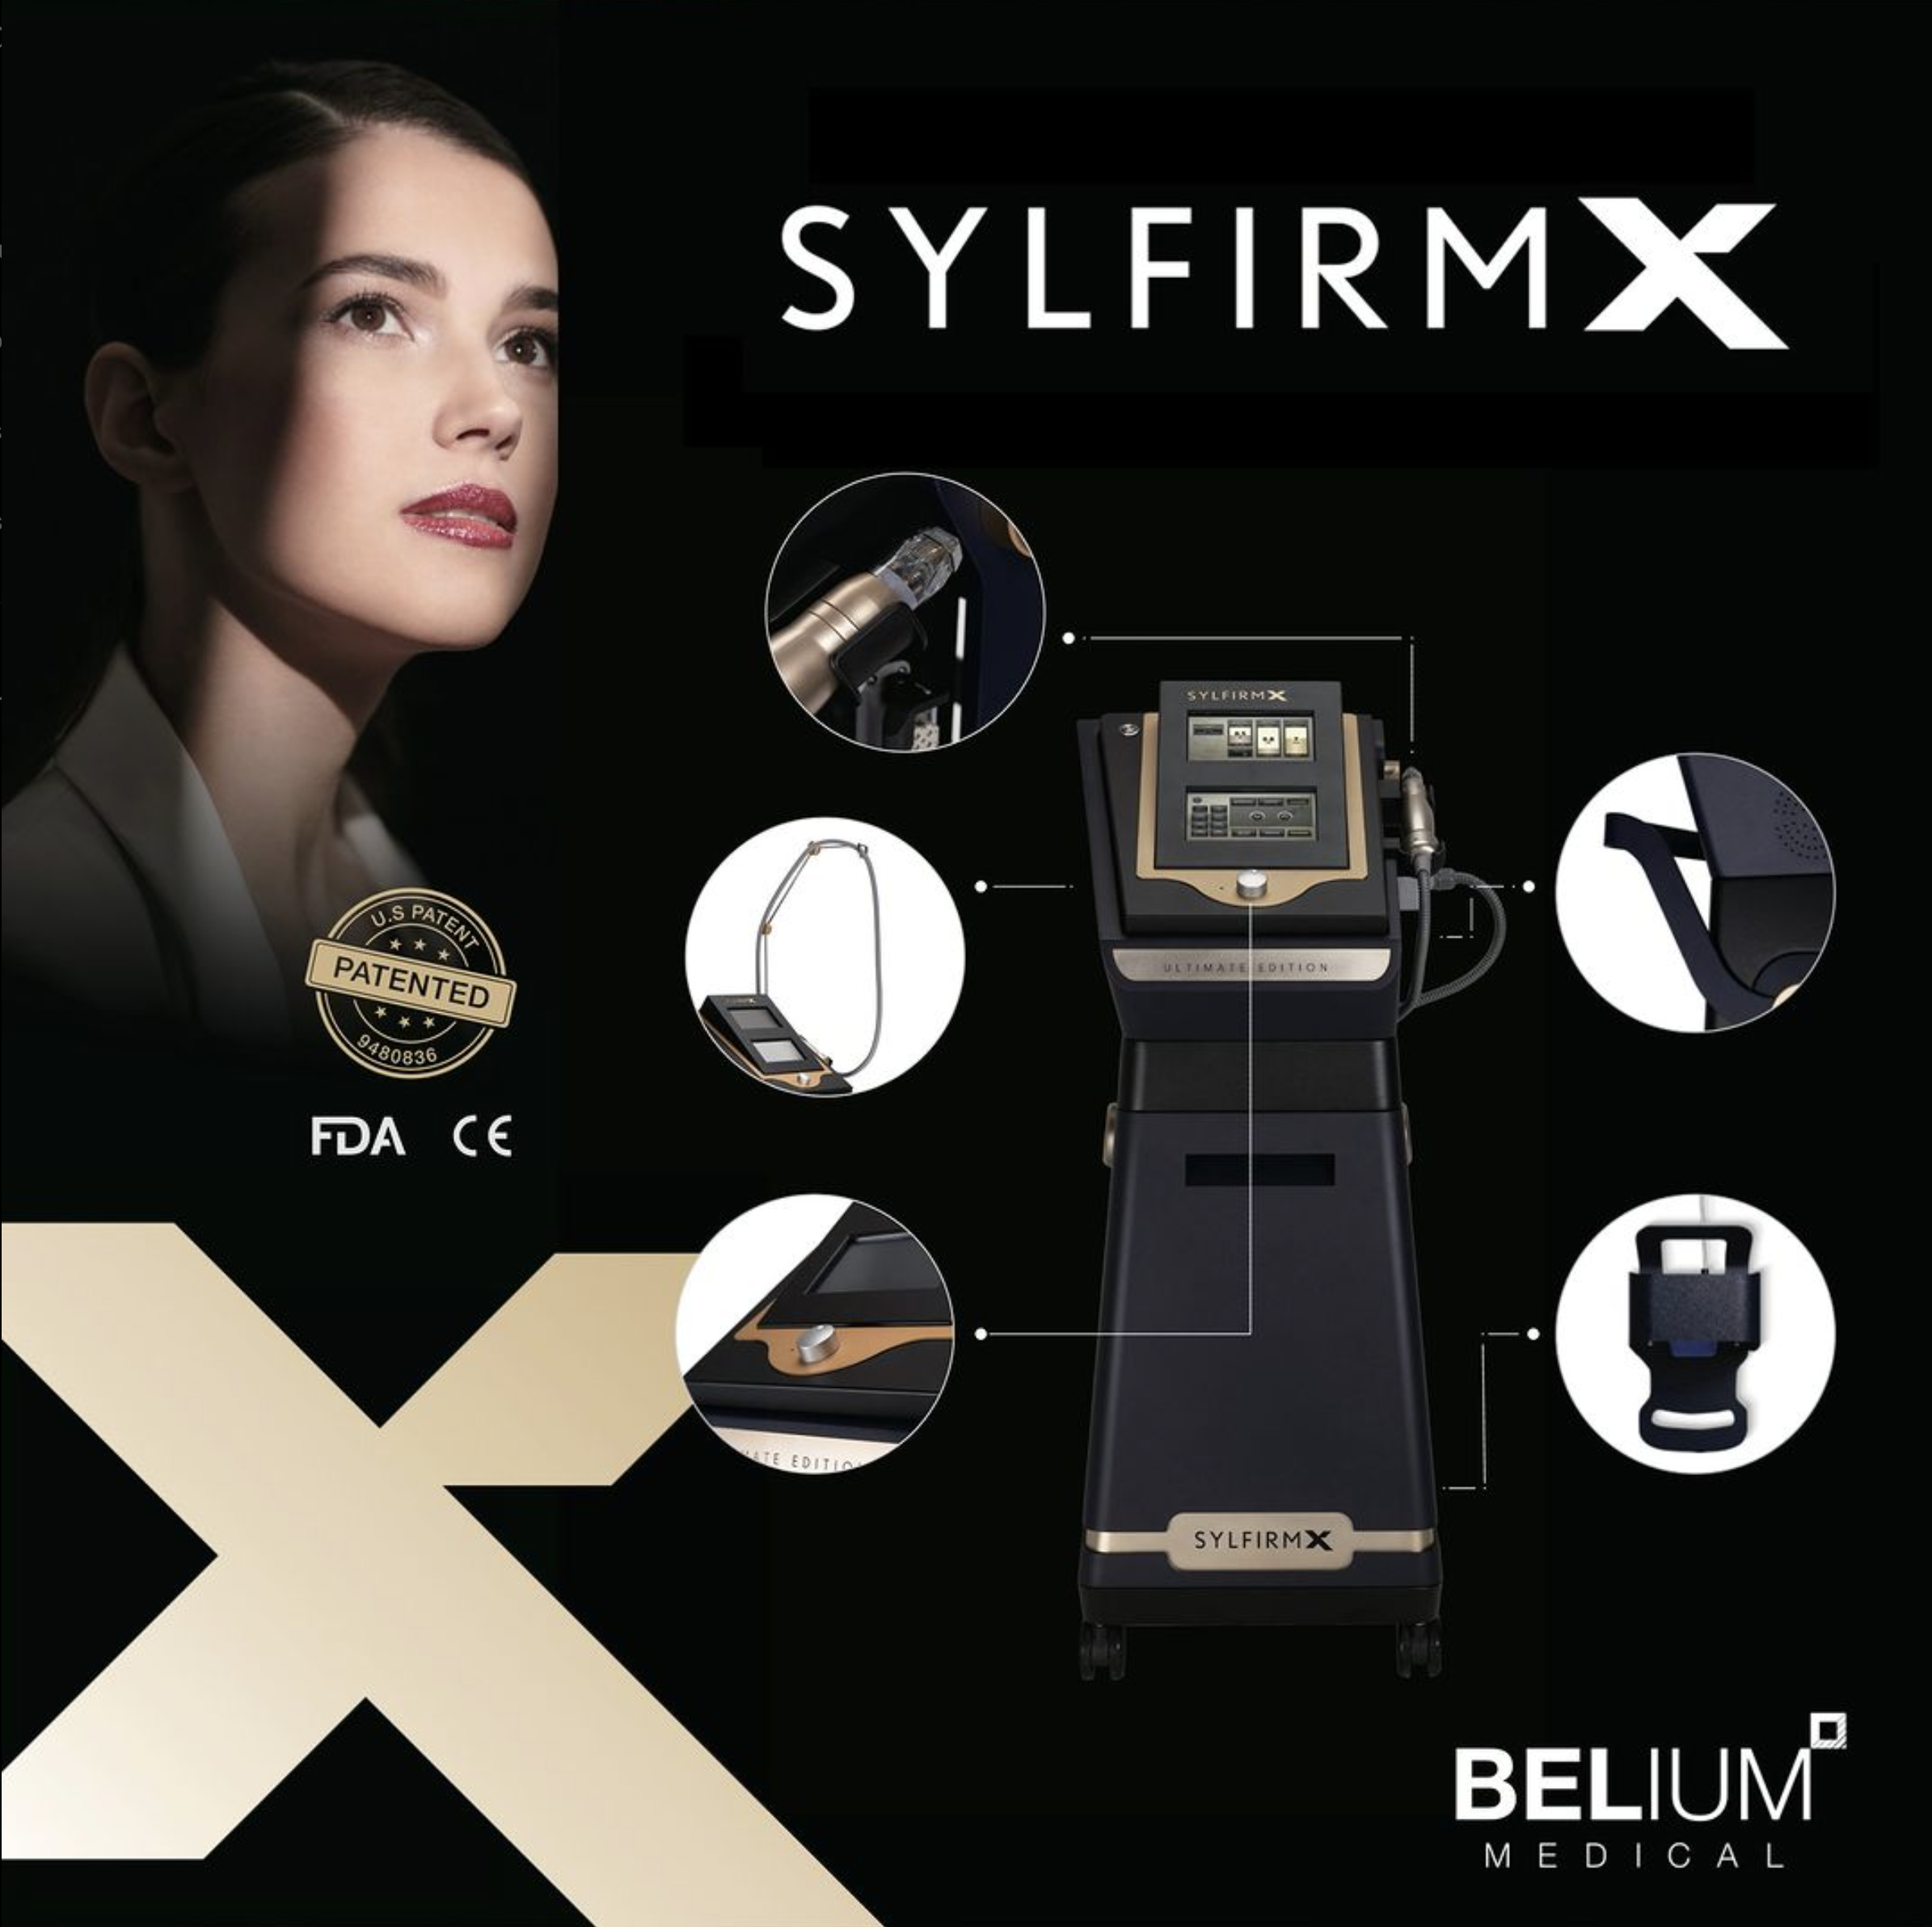 SYLFIRMX La única radiofrecuencia pulsada nº1 en E.E.U.U. Se adapta a todo tipo de condiciones y pigmentaciones de la piel